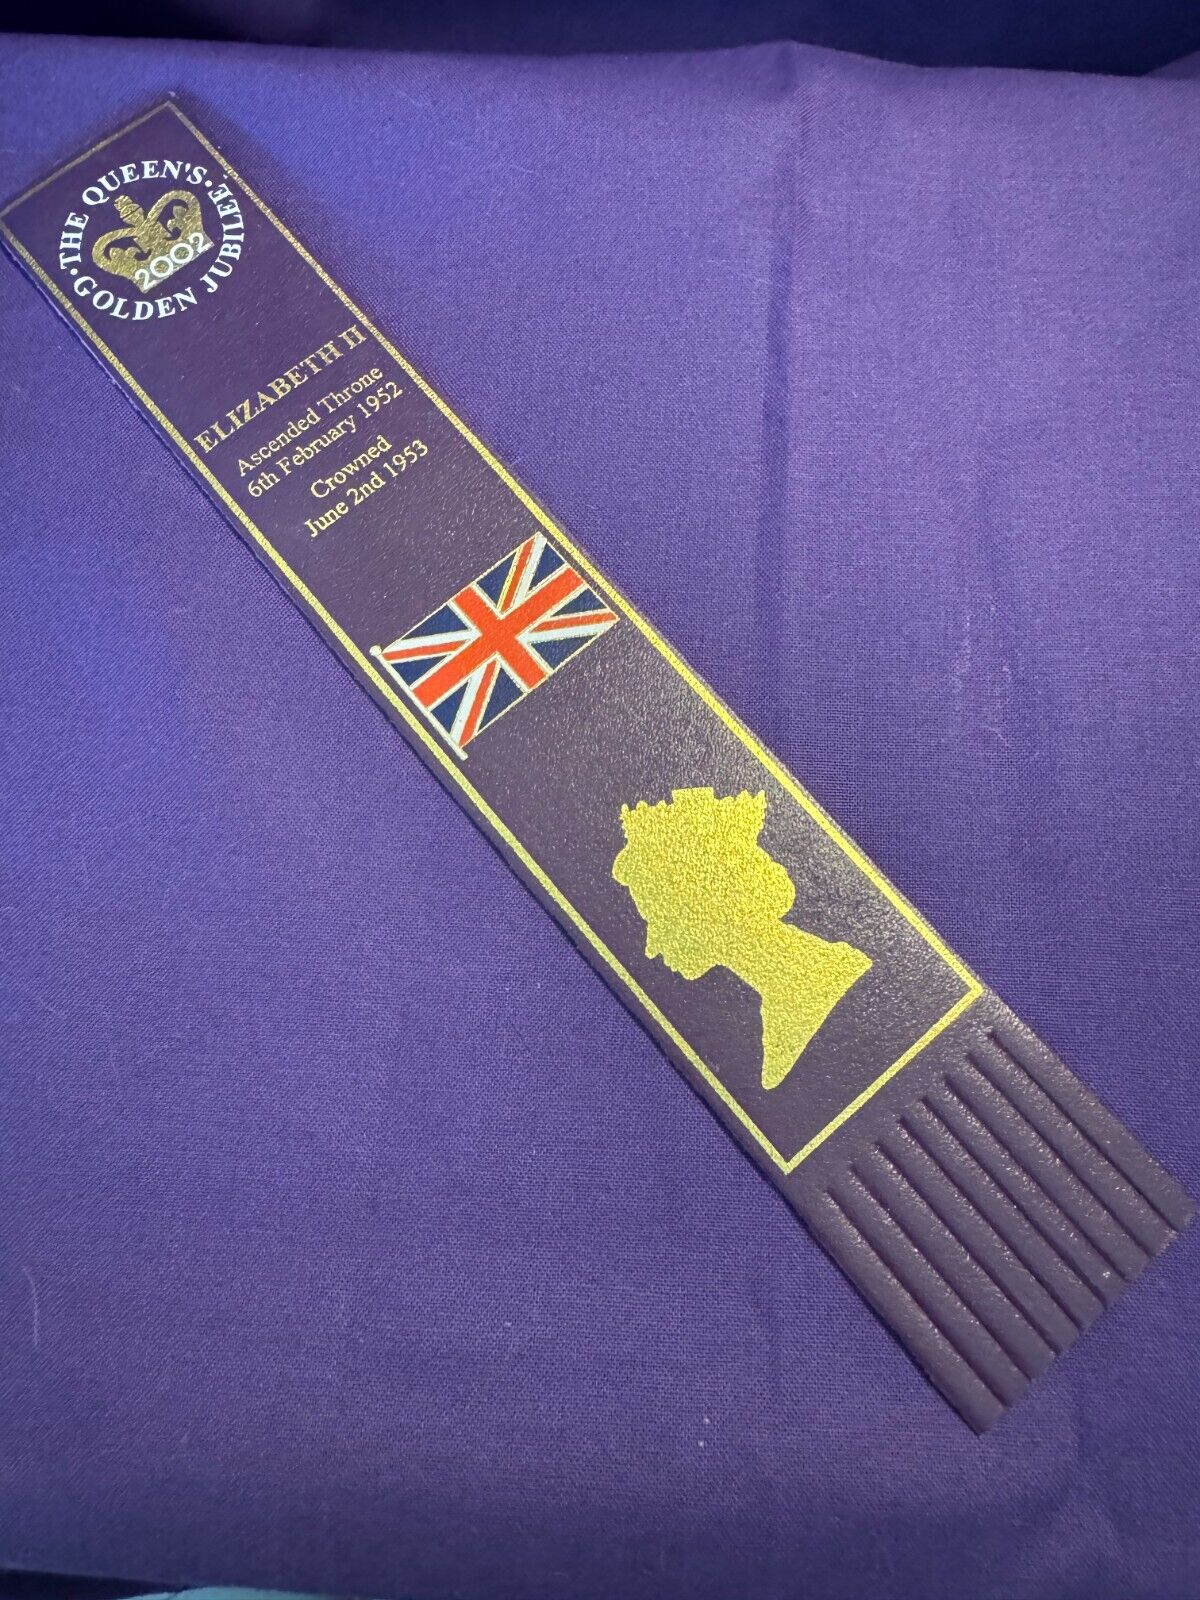 Queen Elizabeth II Golden Jubilee (2002) - PURPLE Leather Bookmark